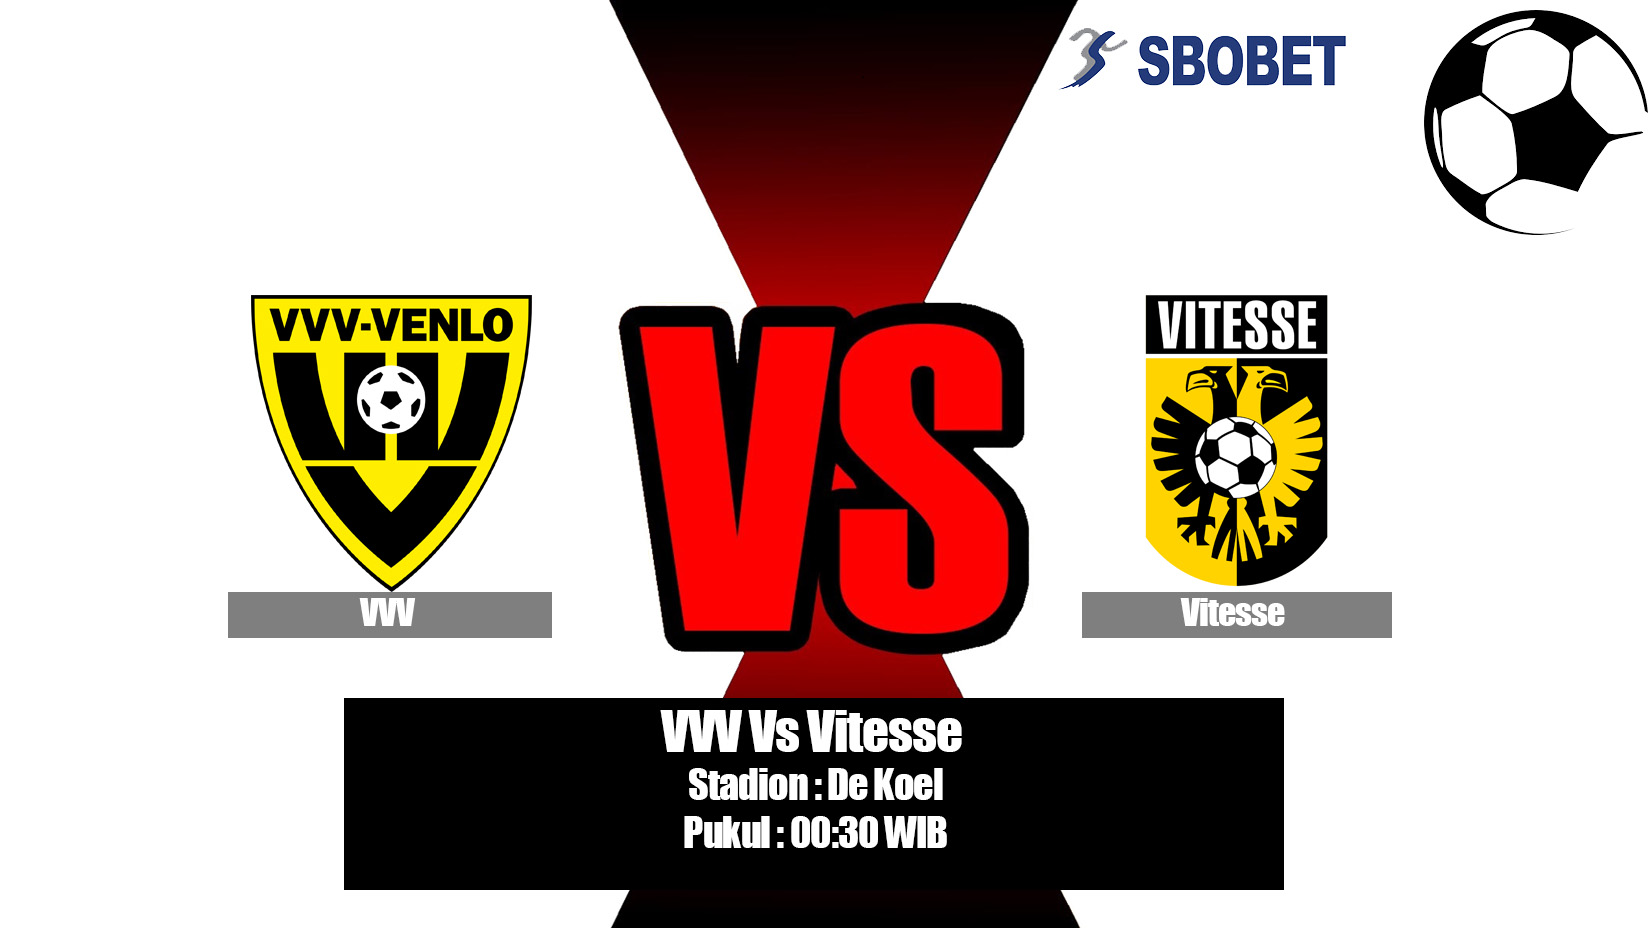 Prediksi Bola VVV Vs Vitesse 16 Mei 2019